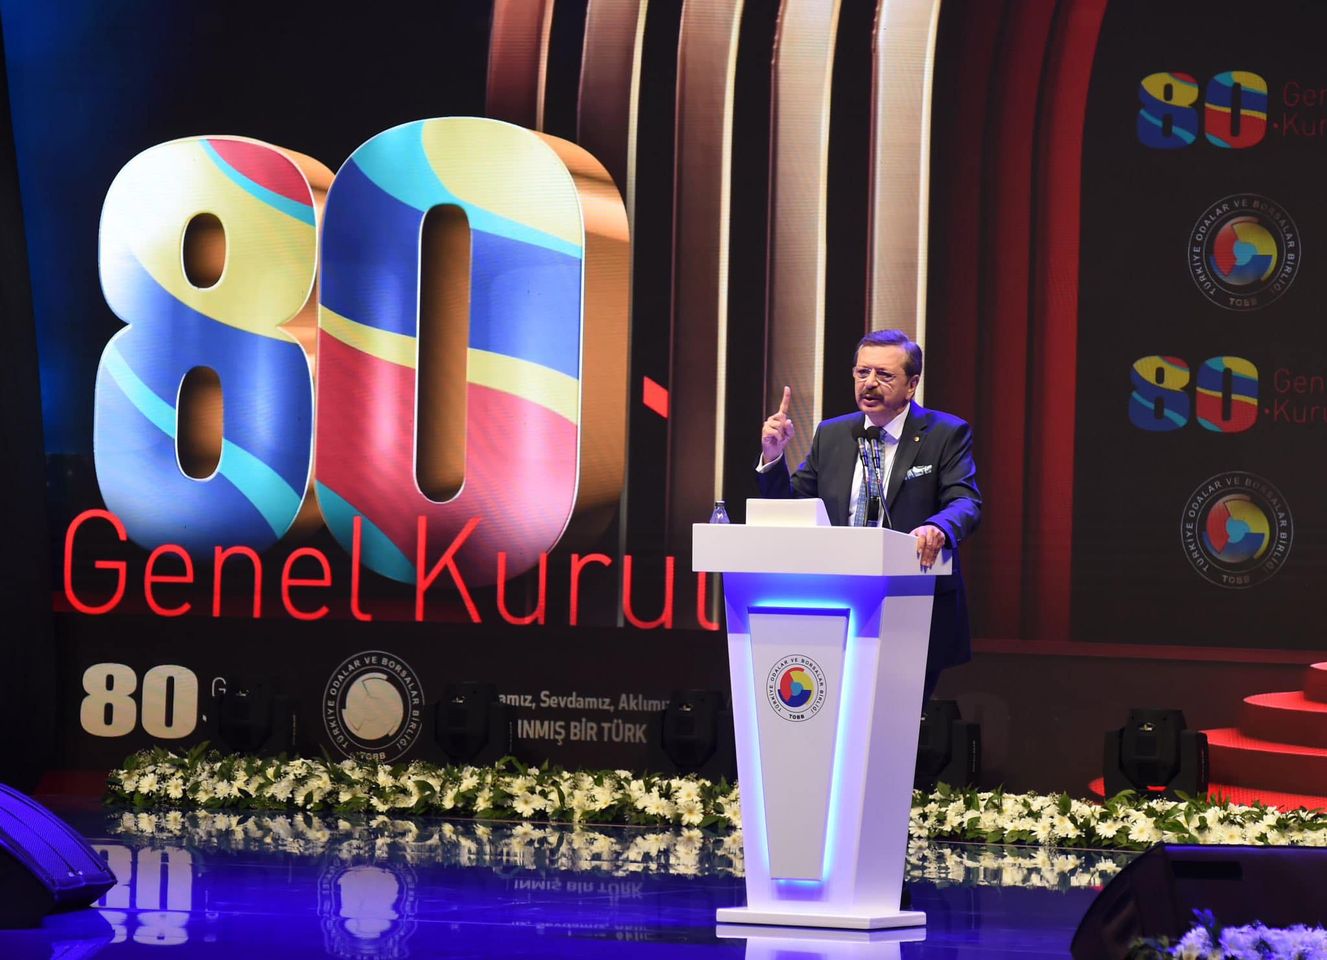 Türkiye Odalar ve Borsalar Birliği (TOBB) 80. Mali Genel Kurul Toplantısı Gerçekleşti